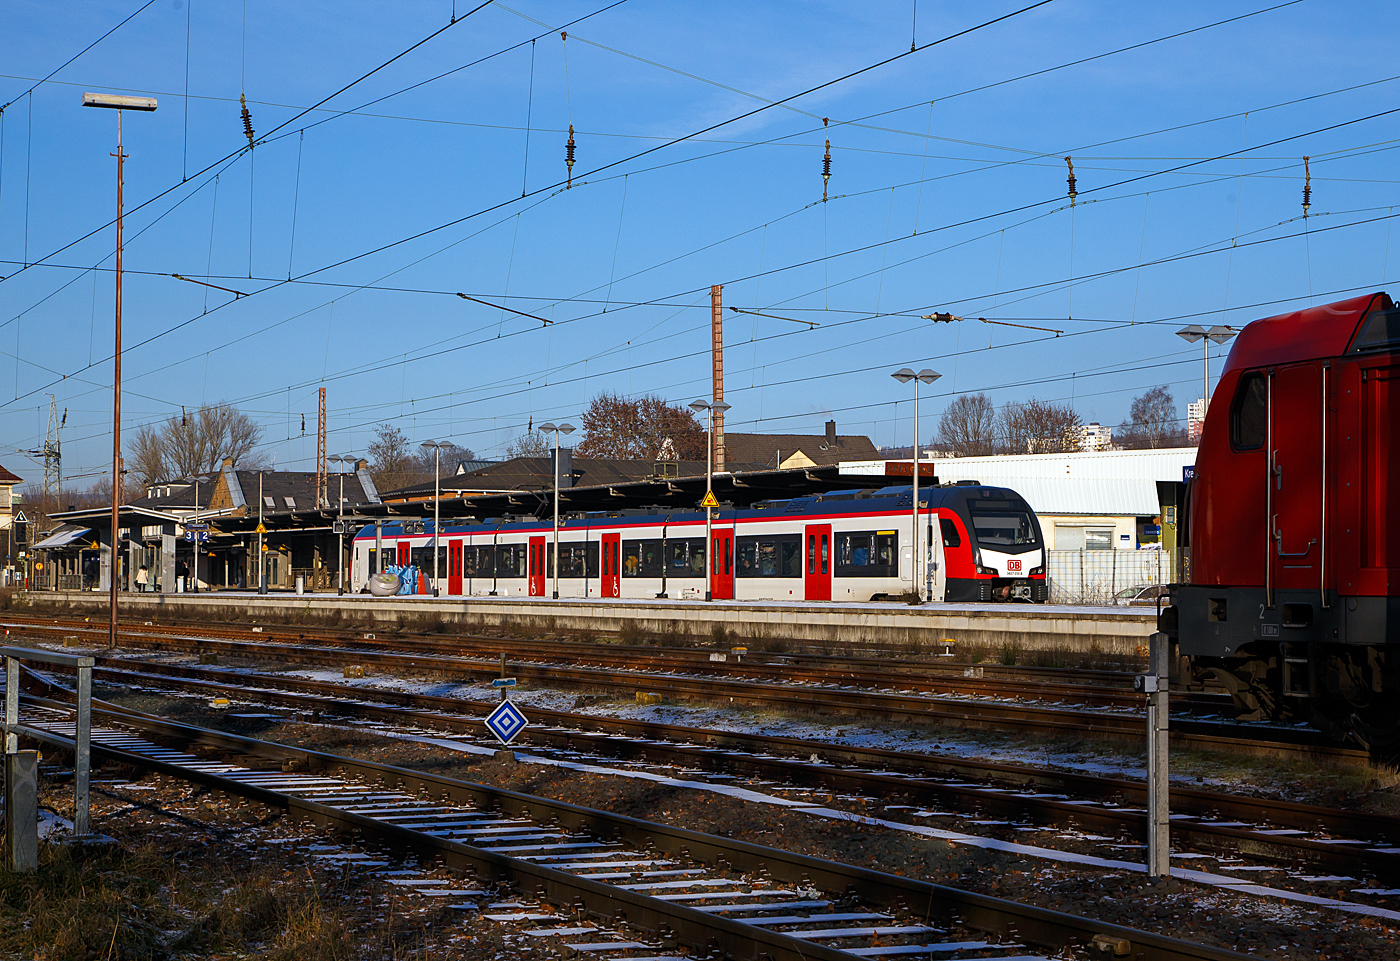 Der dreiteilige Stadler FLIRT 3 XL für die DB Regio AG – NRW fahrende 3427 010 (94 80 3427 010-8 D-STAP / 94 80 3827 010-4 D-STAP / 94 80 3427 510-7 D-STAP) der ZV VRR Eigenbetrieb Fahrzeuge und Infrastruktur, verlässt am 15.12.2022, als RE 34 „Dortmund-Siegerland-Express“ (Dortmund – Letmathe – Altenhundem – Siegen), den Bahnhof Kreuztal und fährt weiter in Richtung Siegen Hbf.

Hier gibt es gleich zwei Neuerungen auf der Strecke, zum einen die neuen dreiteiligen Stadler FLIRT 3 XL Elektrotriebzüge und zum andern die Einführung des RE 34 „Dortmund-Siegerland-Express“ der im zweistunden Takt fährt, wobei durch die IC 34 Verbindung ist ein 1 Stunden-Takt realisiert.

Zum diesjährigen Fahrplanwechsel am Sonntag, dem 11.12.2022 wurde ein neuer Regionalexpress (RE 34) als zweistündliche Direktverbindung zwischen Siegen, Iserlohn-Letmathe und Dortmund eingeführt. Gemeinsam mit dem bereits auf diesem Laufweg verkehrenden InterCity (IC) 34 profitieren Fahrgäste damit künftig von einer Direktverbindung Siegen – Dortmund in nahezu jeder Stunde, wobei im IC 34 zwischen Dillenburg (Hessen) und Dortmund auch Tickets des Nahverkehrs nutzbar sind.

Zwischen Siegen und Letmathe übernimmt die neue RE-Linie weitgehend die bisherigen Fahrten des bestehenden RE 16, dessen Angebot auf der Ruhr-Sieg-Strecke wegen des neuen RE 34 neu geordnet werden musste. Der RE 16 verkehrt unverändert zwischen Essen – Hagen – Letmathe. Im Bahnhof Letmathe entfällt die bisherige Zugteilung und die Züge fahren grundsätzlich weiter bis Iserlohn. Durch den Wegfall der Zugteilung wird die Verbindung um einige Minuten schneller. Reisende, die aus Richtung Siegen die Ziele Hagen bzw. Essen erreichen wollen, müssen in Letmathe bzw. in Witten umsteigen.

Gegenüber dem Jahr 2022 wurden fürs kommende Jahr ca. 450.000 Zugkilometer zusätzlich auf der Ruhr-Sieg-Achse bestellt. Für die Erbringung der Leistungen wurde die DB Regio NRW beauftragt. Einzelne Leistungen auf der RE 34 und der RB 91 sollen von der Hessischen Landesbahn (HLB) erbracht werden. Zum Einsatz kommen überwiegend komfortable und geräumige Neufahrzeuge vom Typ Stadler Flirt 3 XL. Da diese neue Verbindung auch als Entlastung für die bei Lüdenscheid langfristig gesperrte Autobahn A45 konzipiert ist, werden die Leistungen des RE 34 finanziell durch das Land NRW gefördert.

Die Fernverkehrslinie hatte bereits Ende 2021 den Betrieb aufgenommen. Zeitgleich ist für diese Leistungen auch die Anerkennung des WestfalenTarifs im Geltungsbereich des NWL in Kraft getreten. Seit September 2022 können Nahverkehrskunden den IC 34 auf der Ruhr-Siegstrecke nun auch von und bis nach Dortmund nutzen. Neben WestfalenTarif und VRR-Tarif umfasst die Freigabe ohne Aufpreis auch die Nutzung mit räumlich und zeitlich gültigen Tickets des NRW- und Deutschlandtarifs. Die Freigabe gilt für alle IC 34-Leistungen, die von und nach Dortmund fahren. Nicht freigegeben sind die Züge im Abschnitt Dortmund – Münster. Für die Fahrradmitnahme gelten die Regelungen des Fernverkehrs der Deutschen Bahn, hierzu sind eine entsprechende Fahrradkarte und Reservierung vor Reiseantritt erforderlich. 

Stadler FLIRT 3 XL, dreiteilig der BR 3427:
Die Fahrzeuge der BR 3427 vom Typ STADLER Flirt 3 XL sind, in der sogenannten XL-Ausführung, mit 67.600 mm um 4,4m länger als die normalen STADLER Flirt 3 (BR 1427), zudem haben diese 6 Türen pro Fahrzeugseite (anstatt 3). Der FLIRT verfügt über eine hohe Antriebsleistung (2.720 kW) und eine maximale Geschwindigkeit von 160 km/h. Die 3-Teiler haben 180 Sitzplätze (16 in der 1.Klasse und 154 in der 2. Klasse). 

Mehr Technik zum Fahrzeug folgt noch .....
